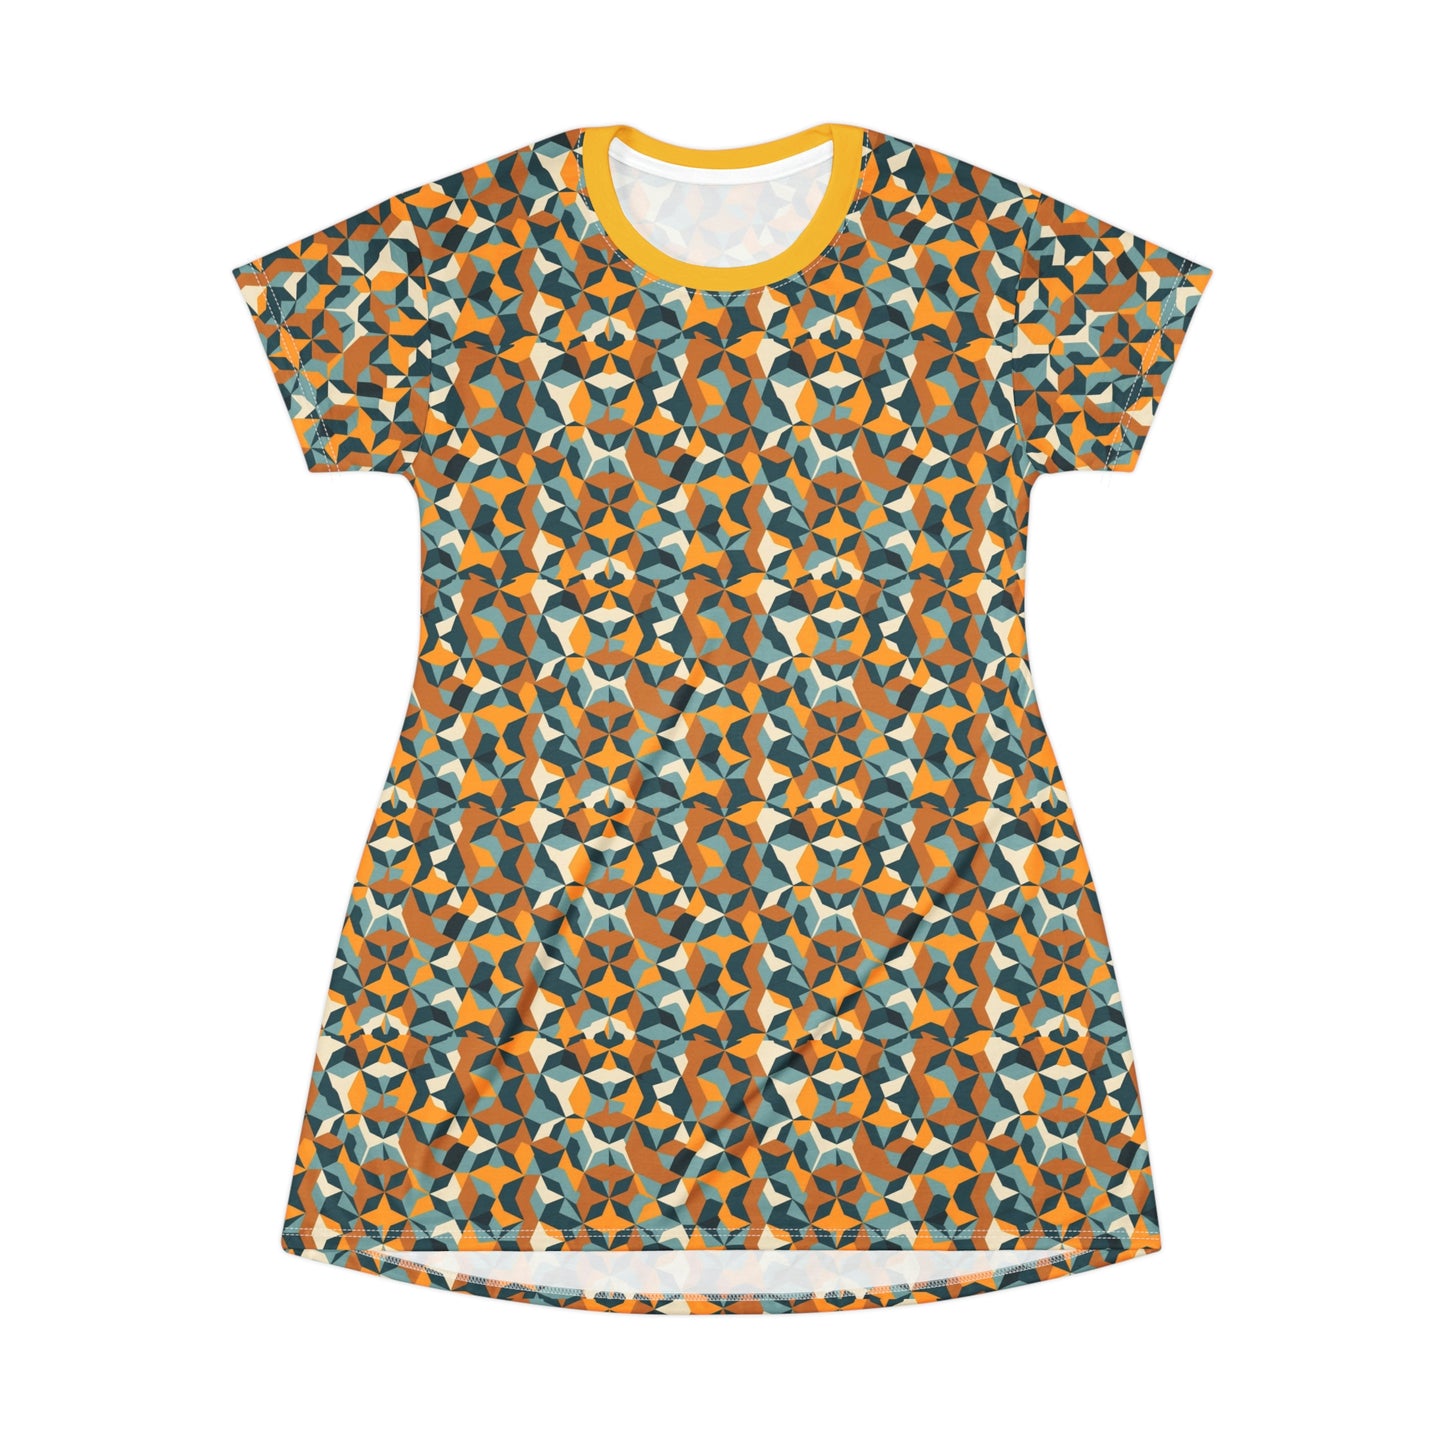 Primitive T-shirt dress Printify